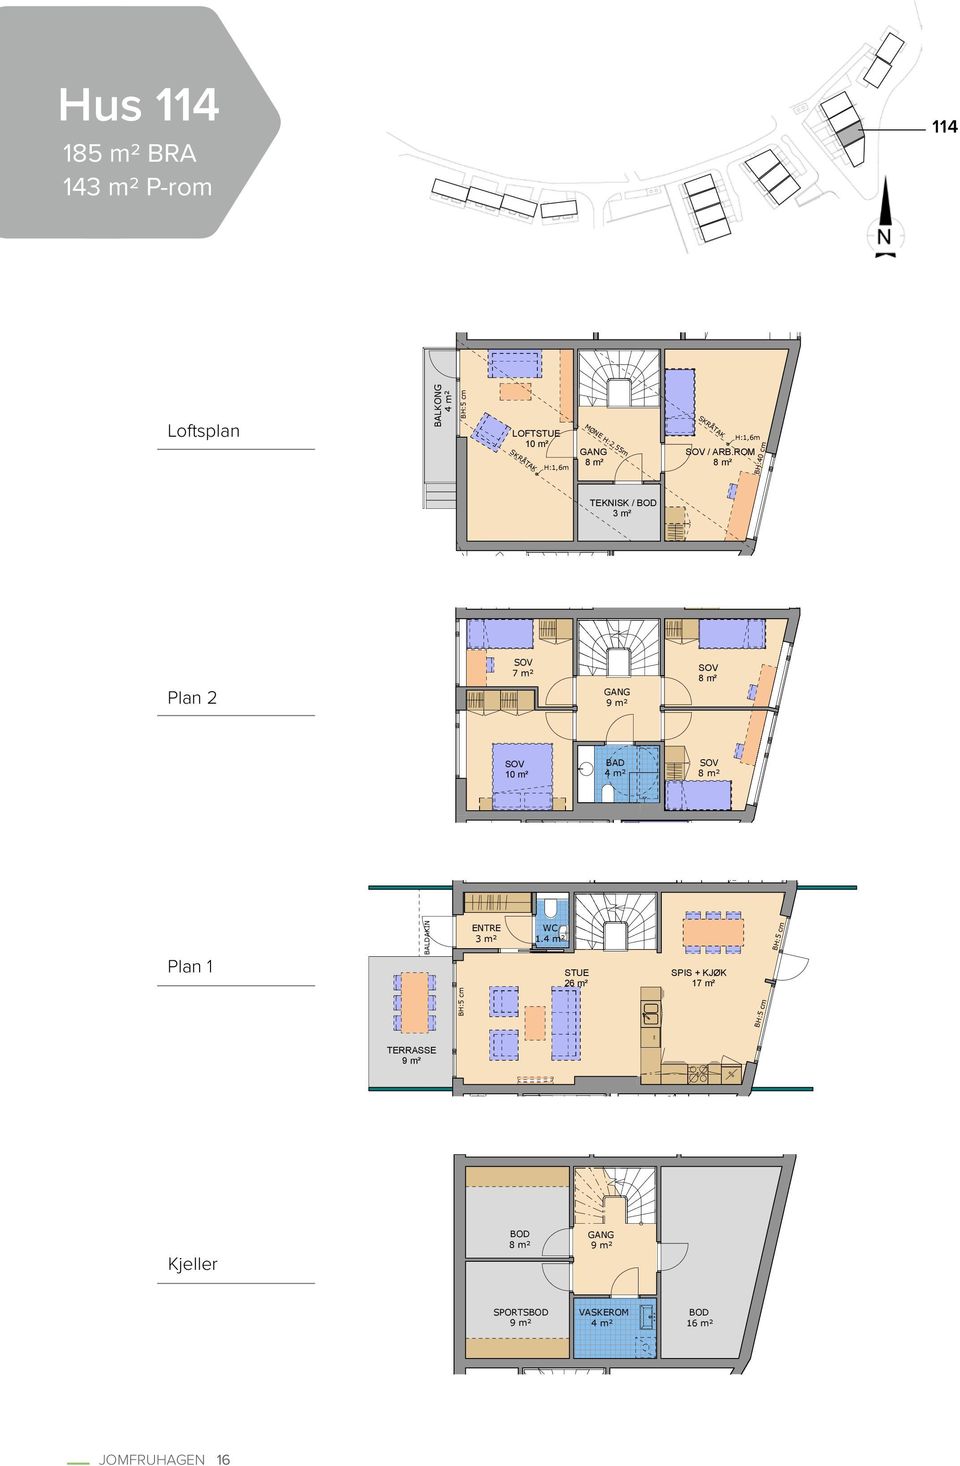 ROM 8 m² TEKNISK / BOD 3 m² Plan 2 SOV 7 m² GANG 9 m² SOV 8 m² SOV 10 m² BAD 4 m² SOV 8 m² Plan 1